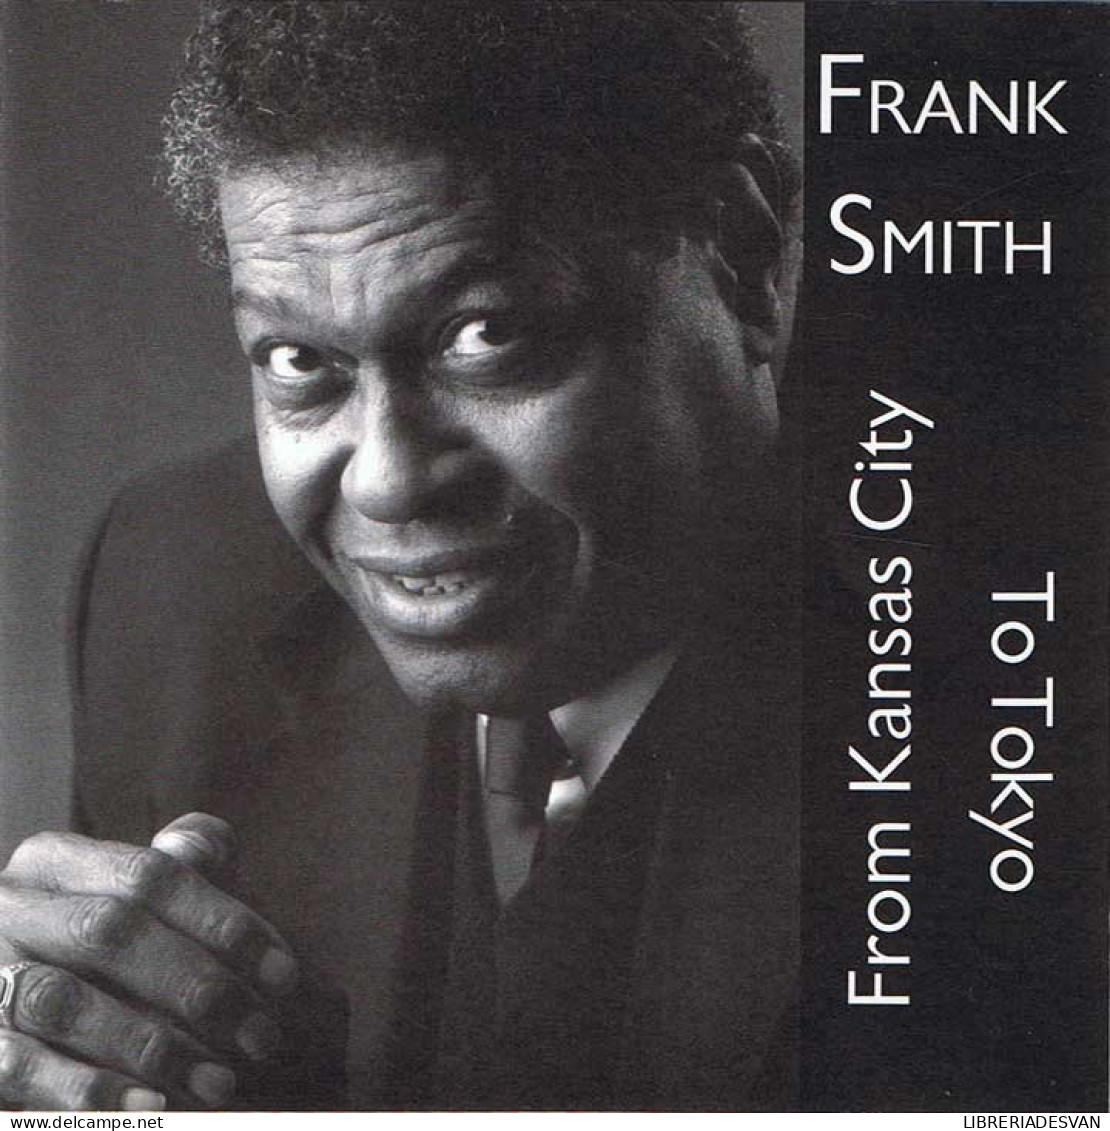 Frank Smith - From Kansas City To Tokyo. CD - Jazz